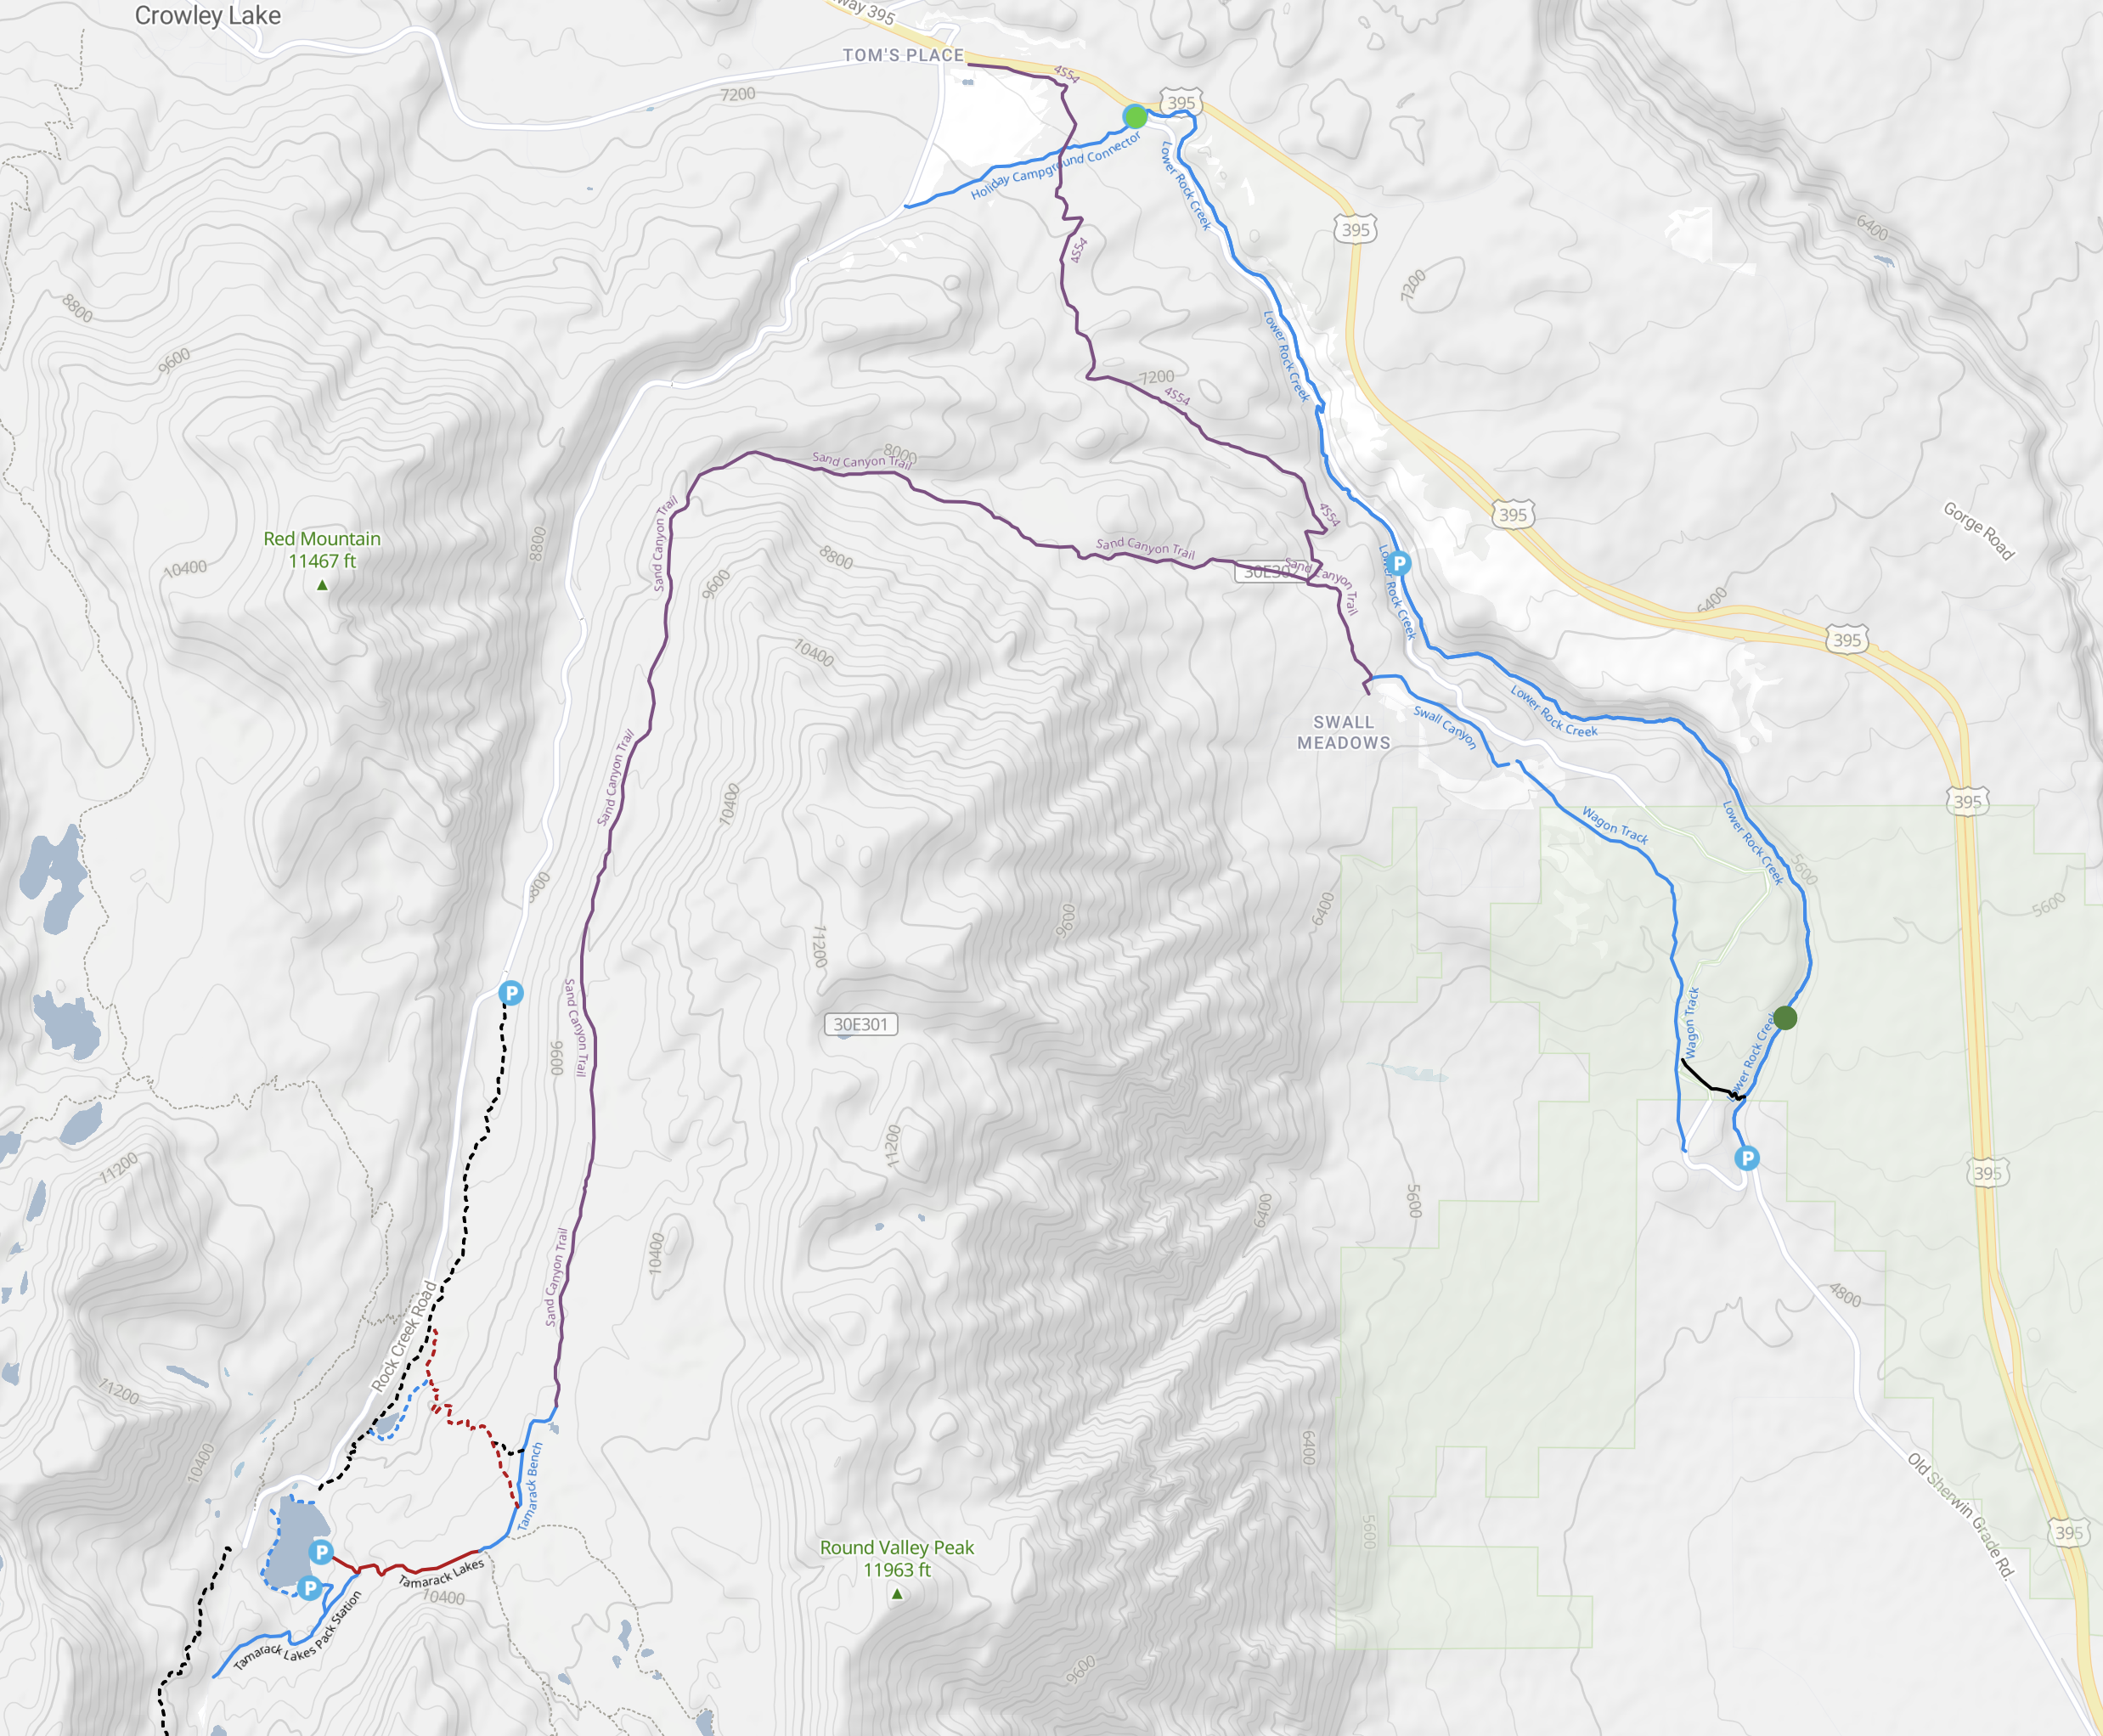 Map - Mountain Biking Rock Creek Canyon & Toms Place, Upper Gorge